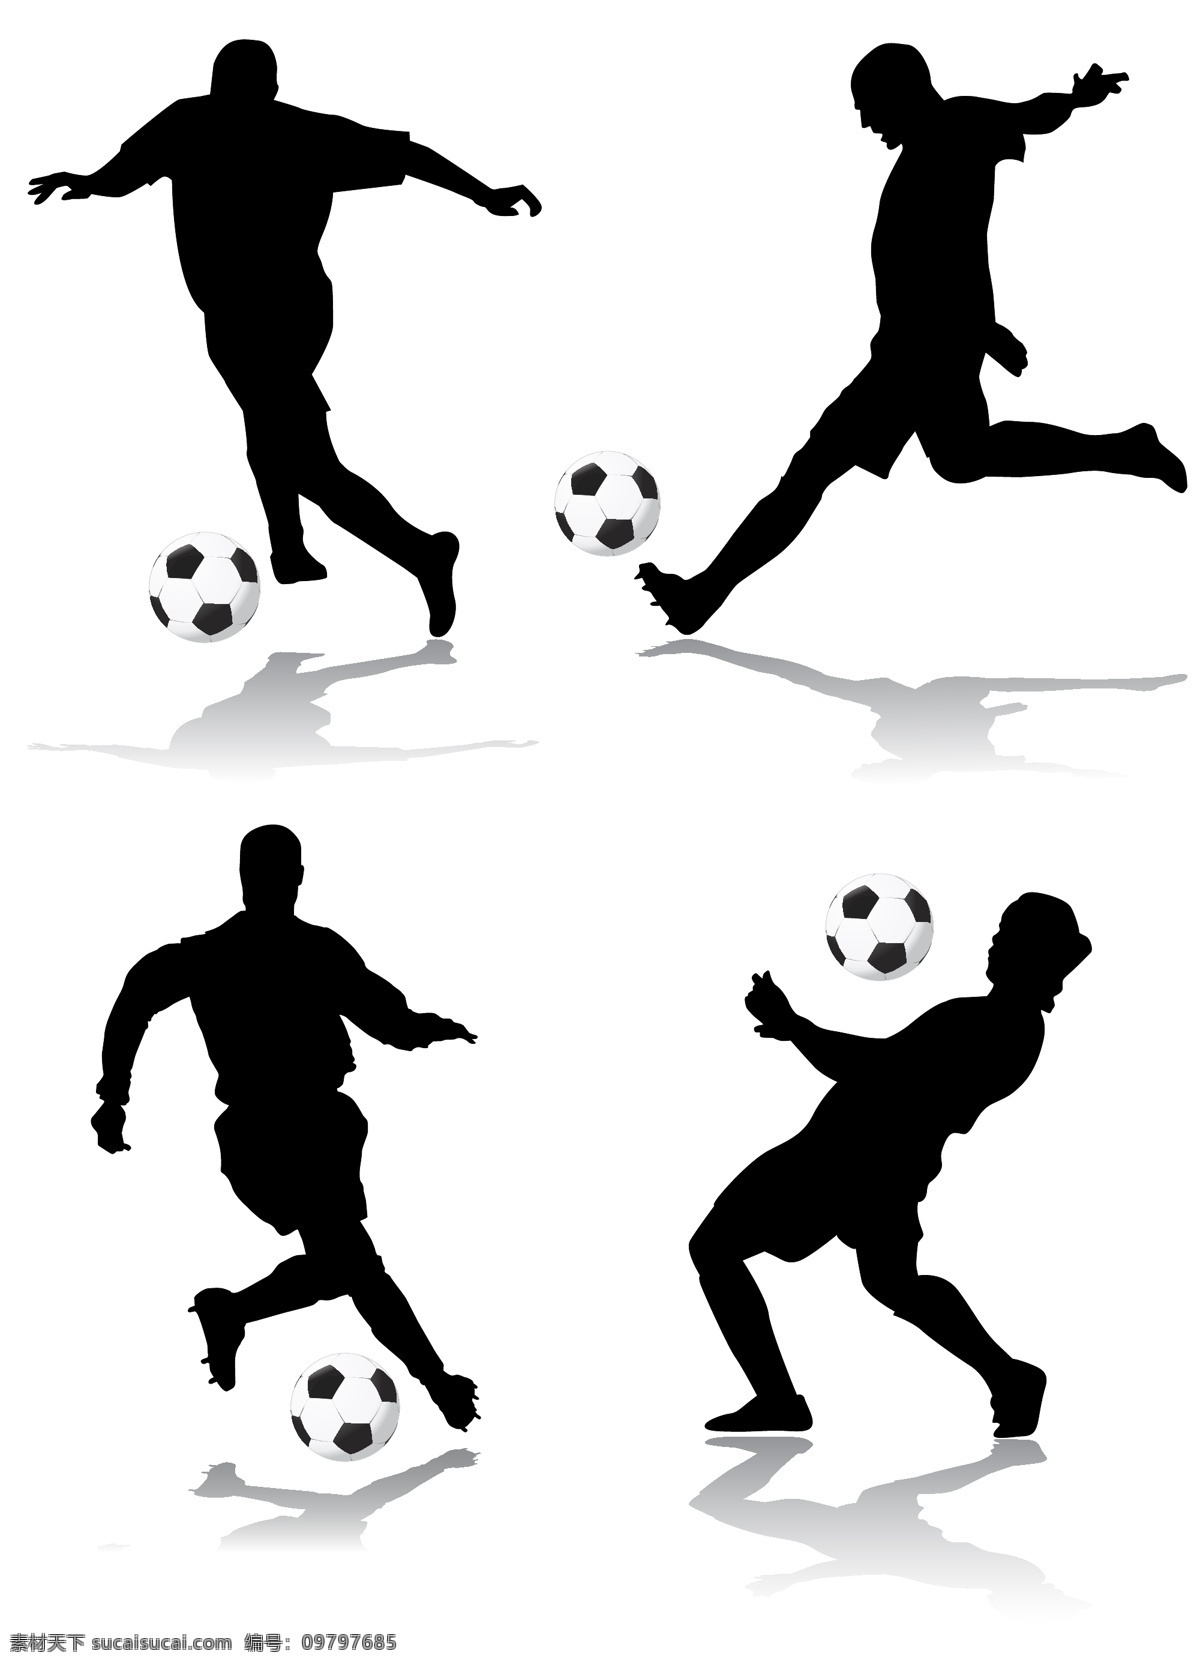 足球 人物 动作 剪影 矢量 球 人物剪影 体育 运动员 运球 矢量图 日常生活